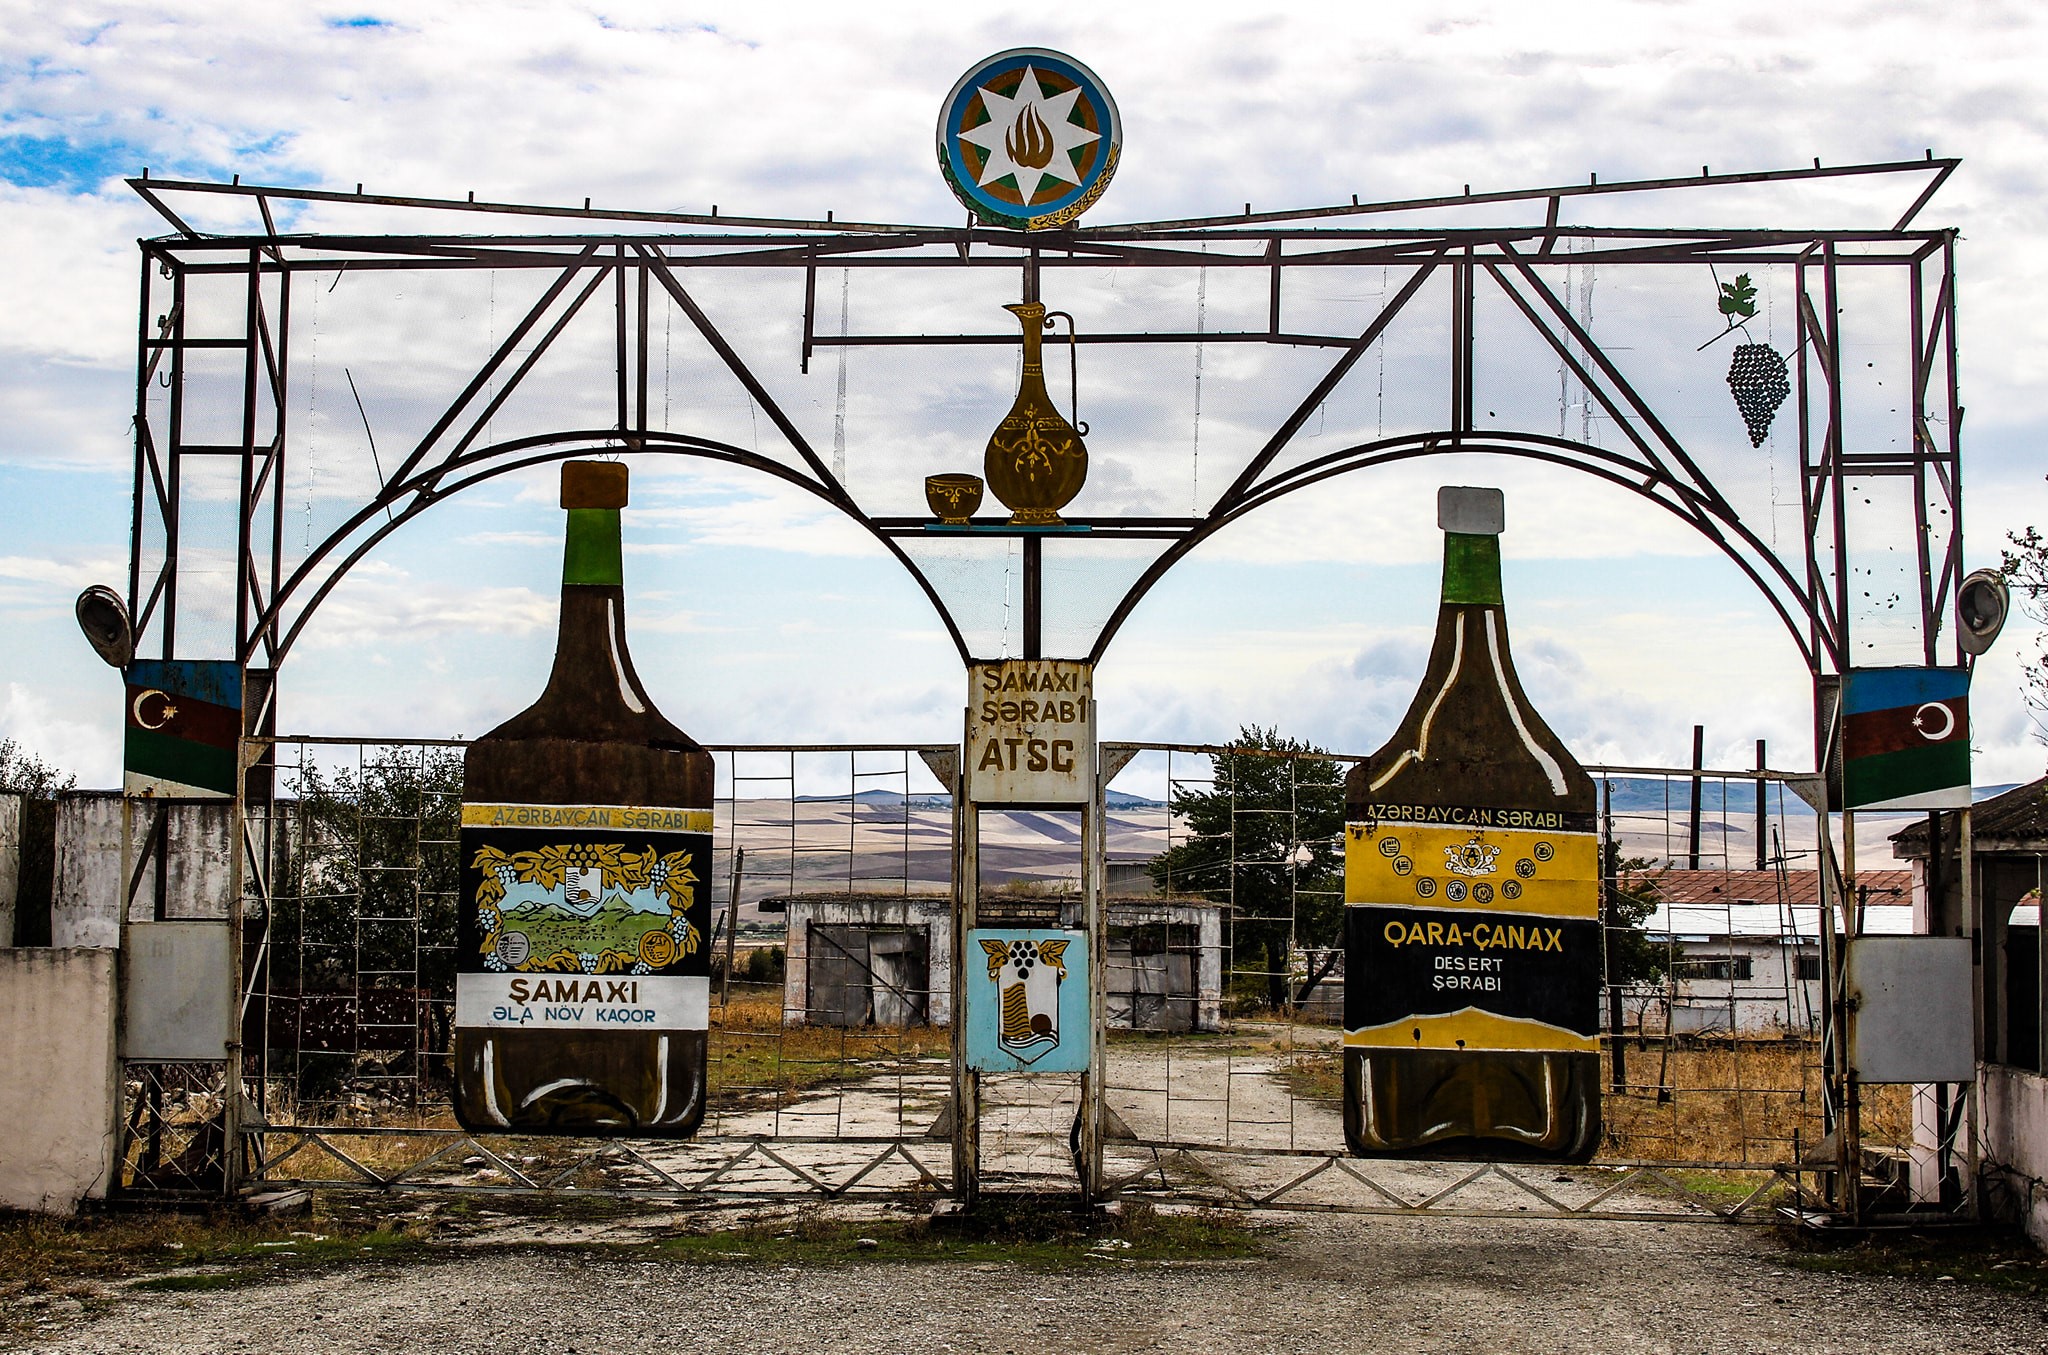 A Soviet wine factory in Şamaxi, Azerbaijan